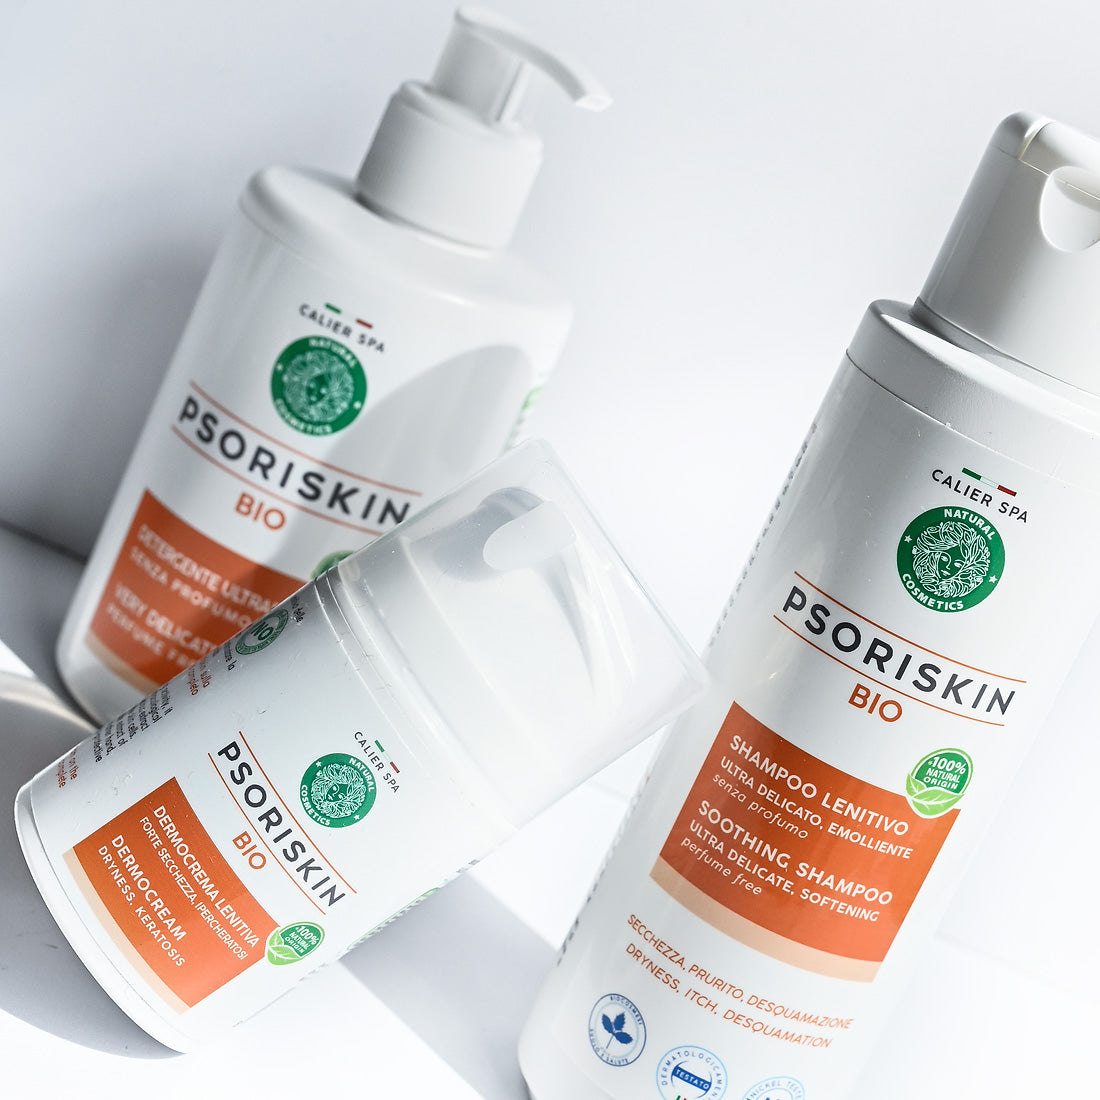 Psoriskin di Calier SPA: La soluzione naturale e biologica per combattere la psoriasi con crema, shampoo e detergente